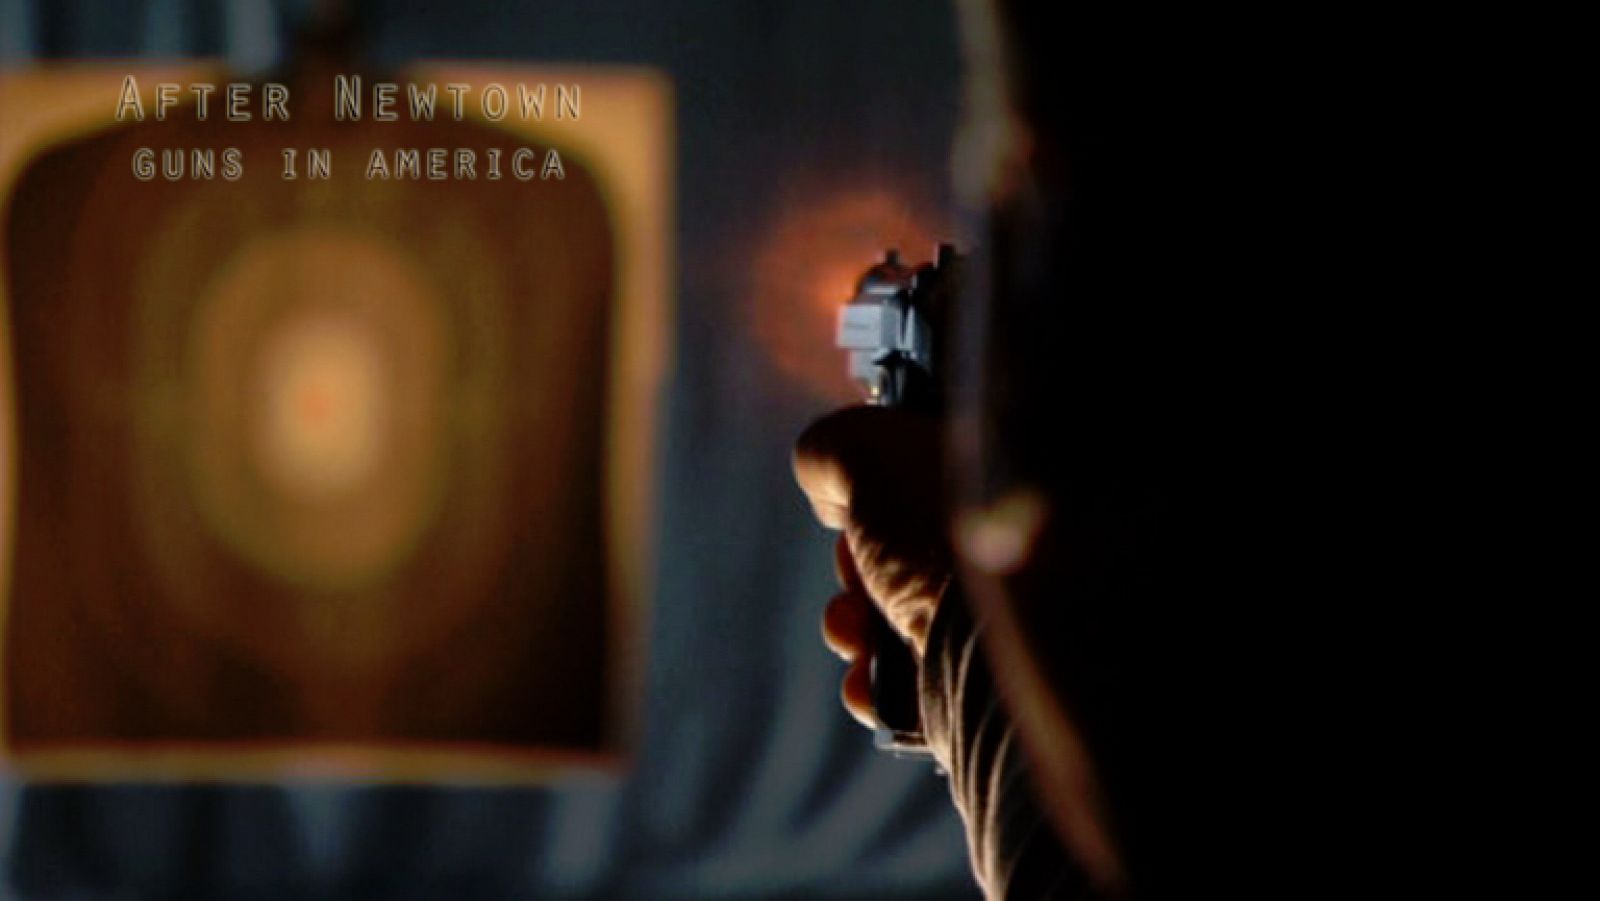 La Noche Temática - Armas en América: después de Newtown - Comienzo